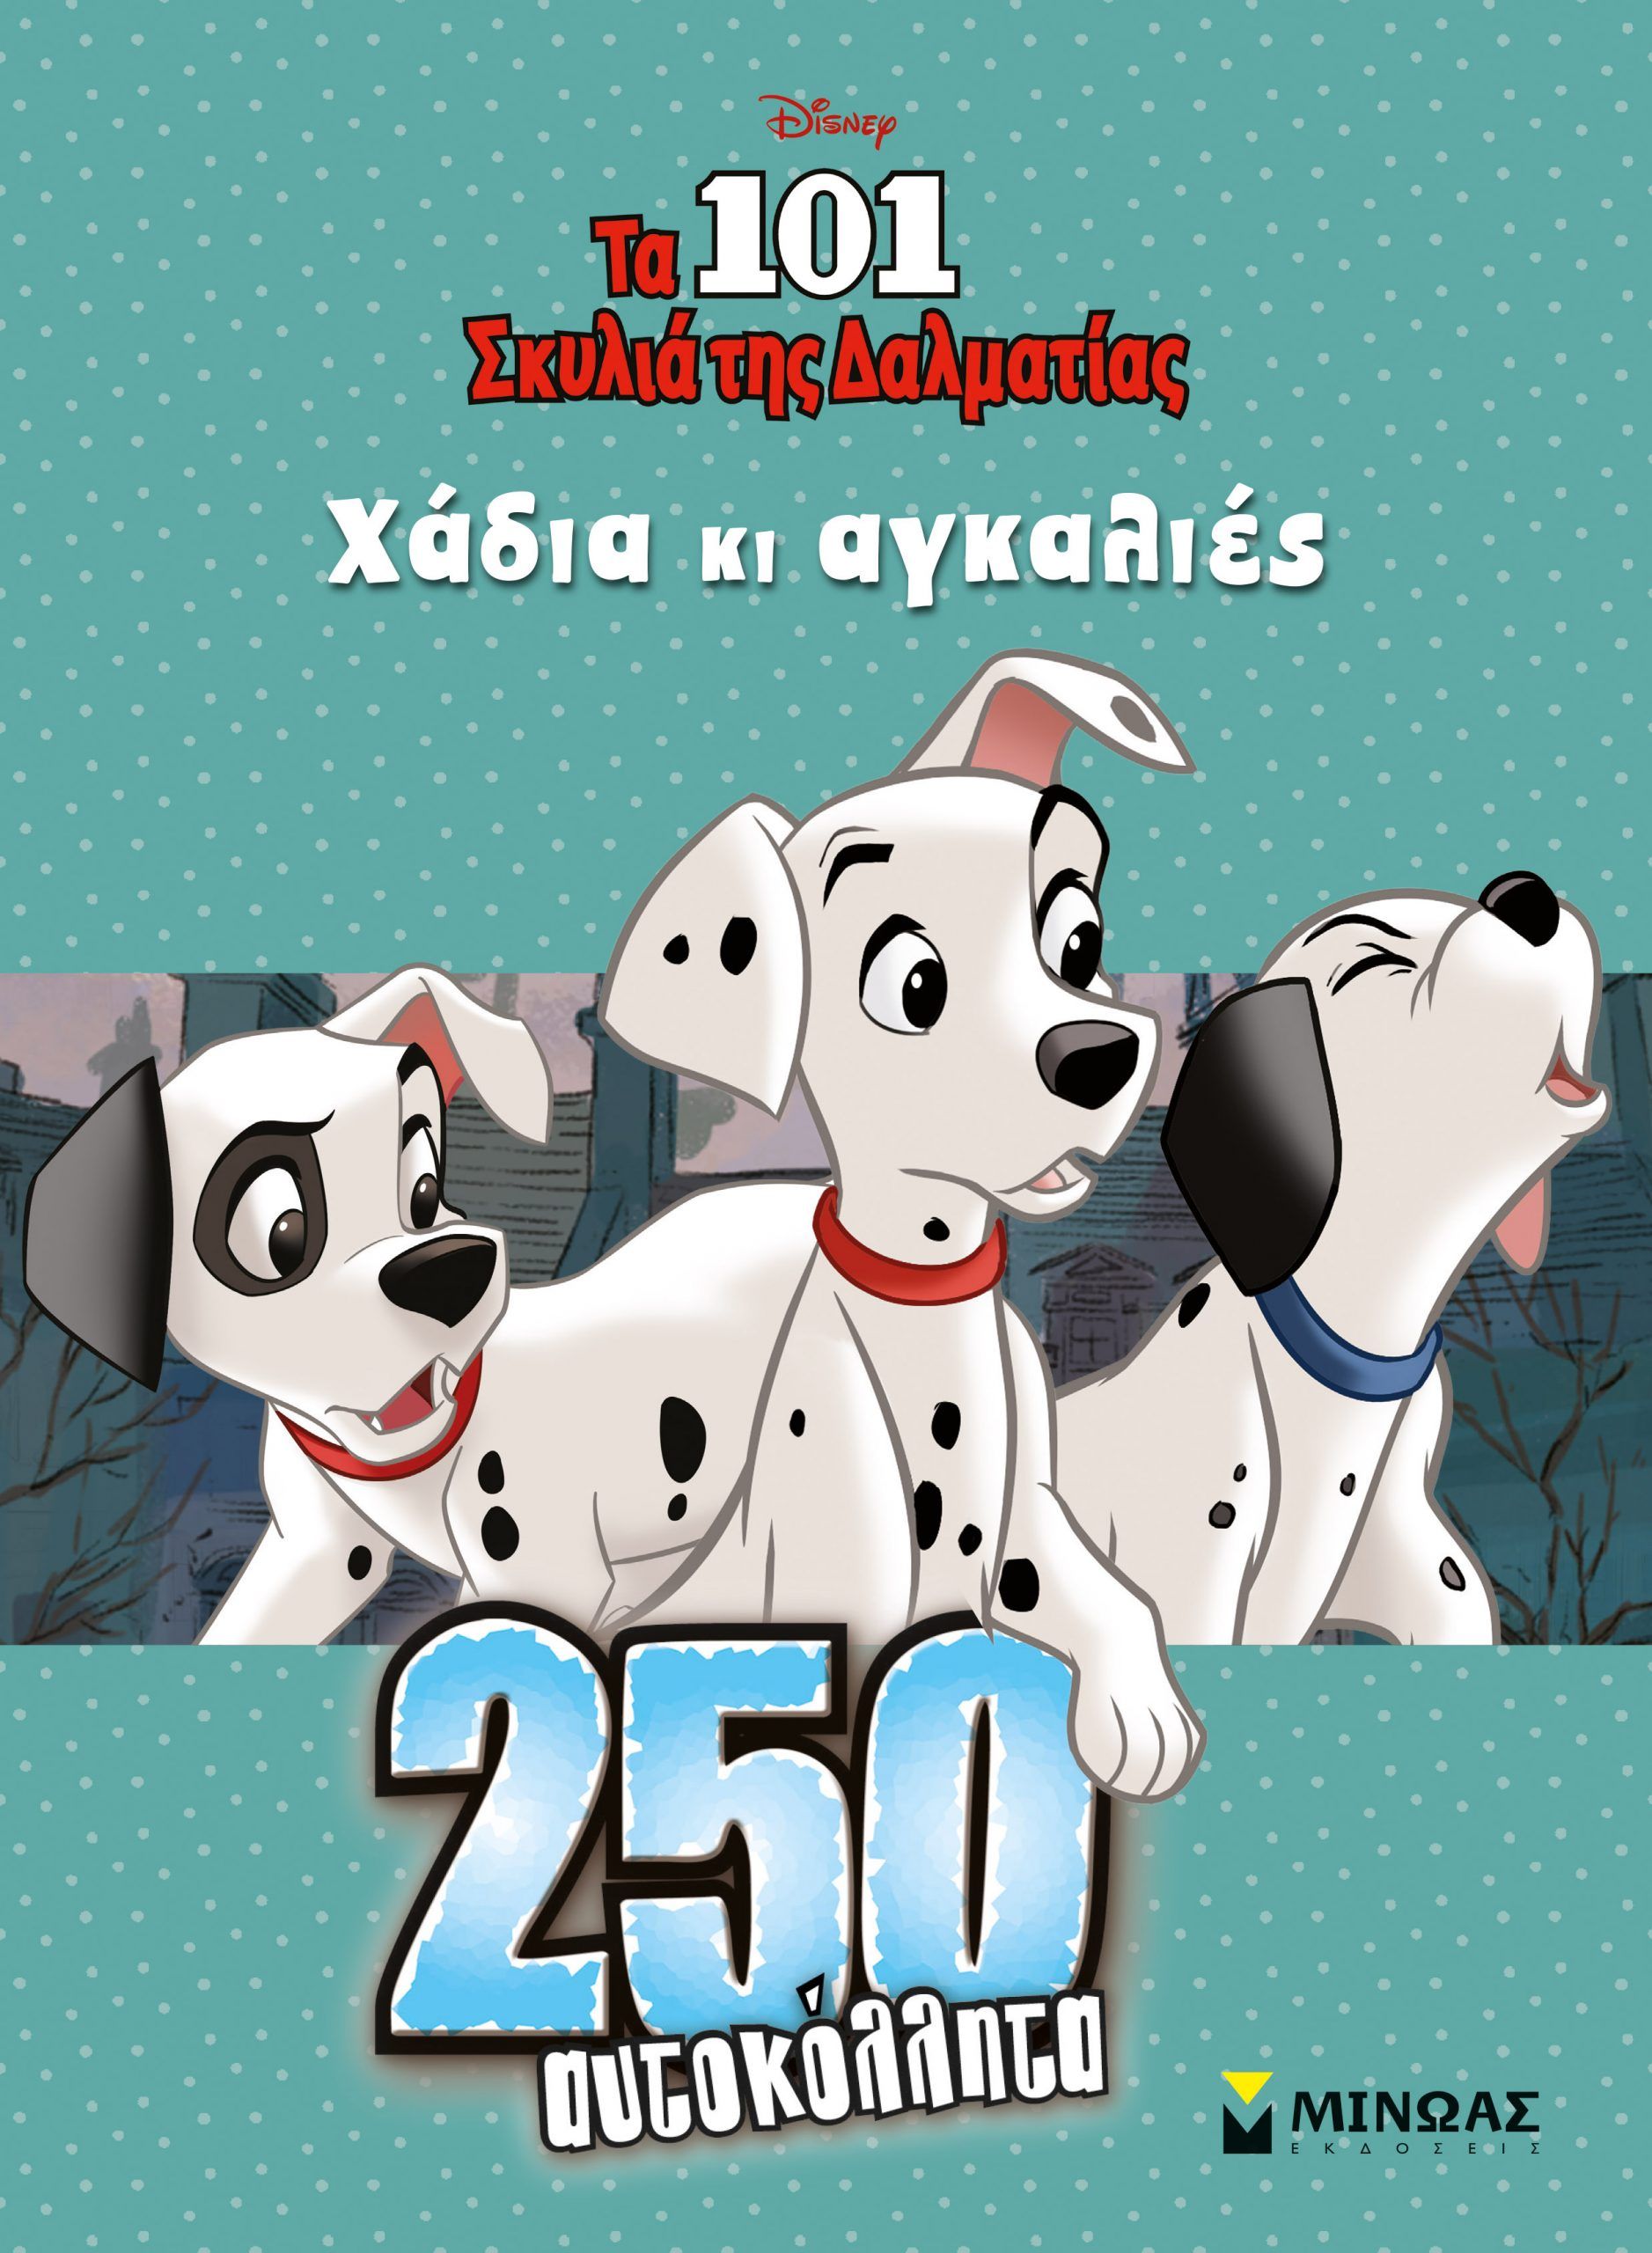 250 Αυτοκόλλητα - Τα 101 σκυλιά της Δαλματίας, Χάδια κι αγκαλιές